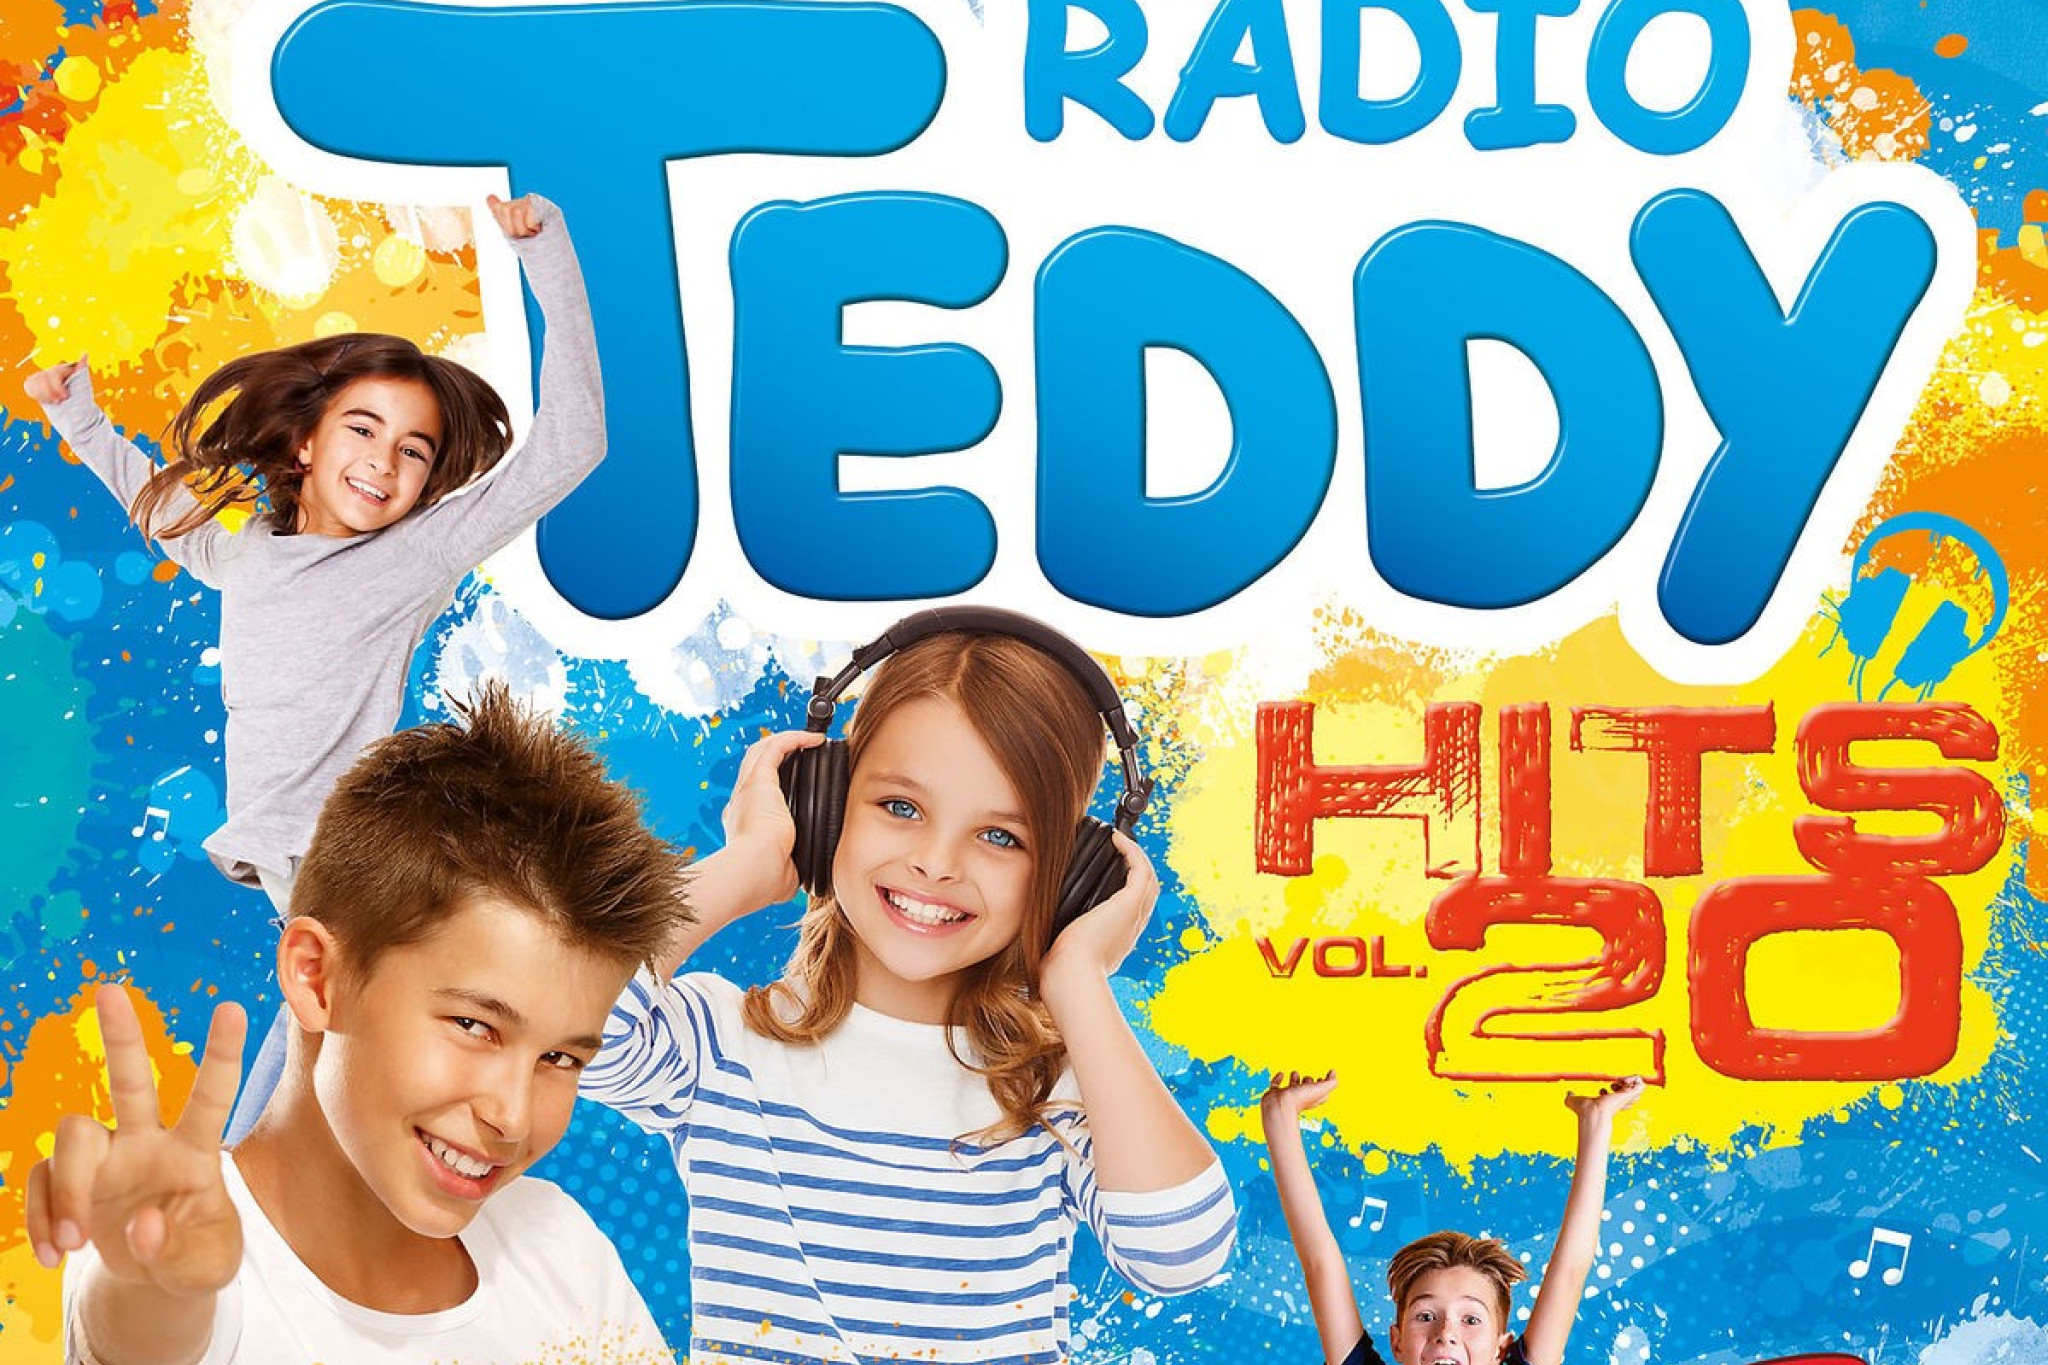 radio teddy vol 20